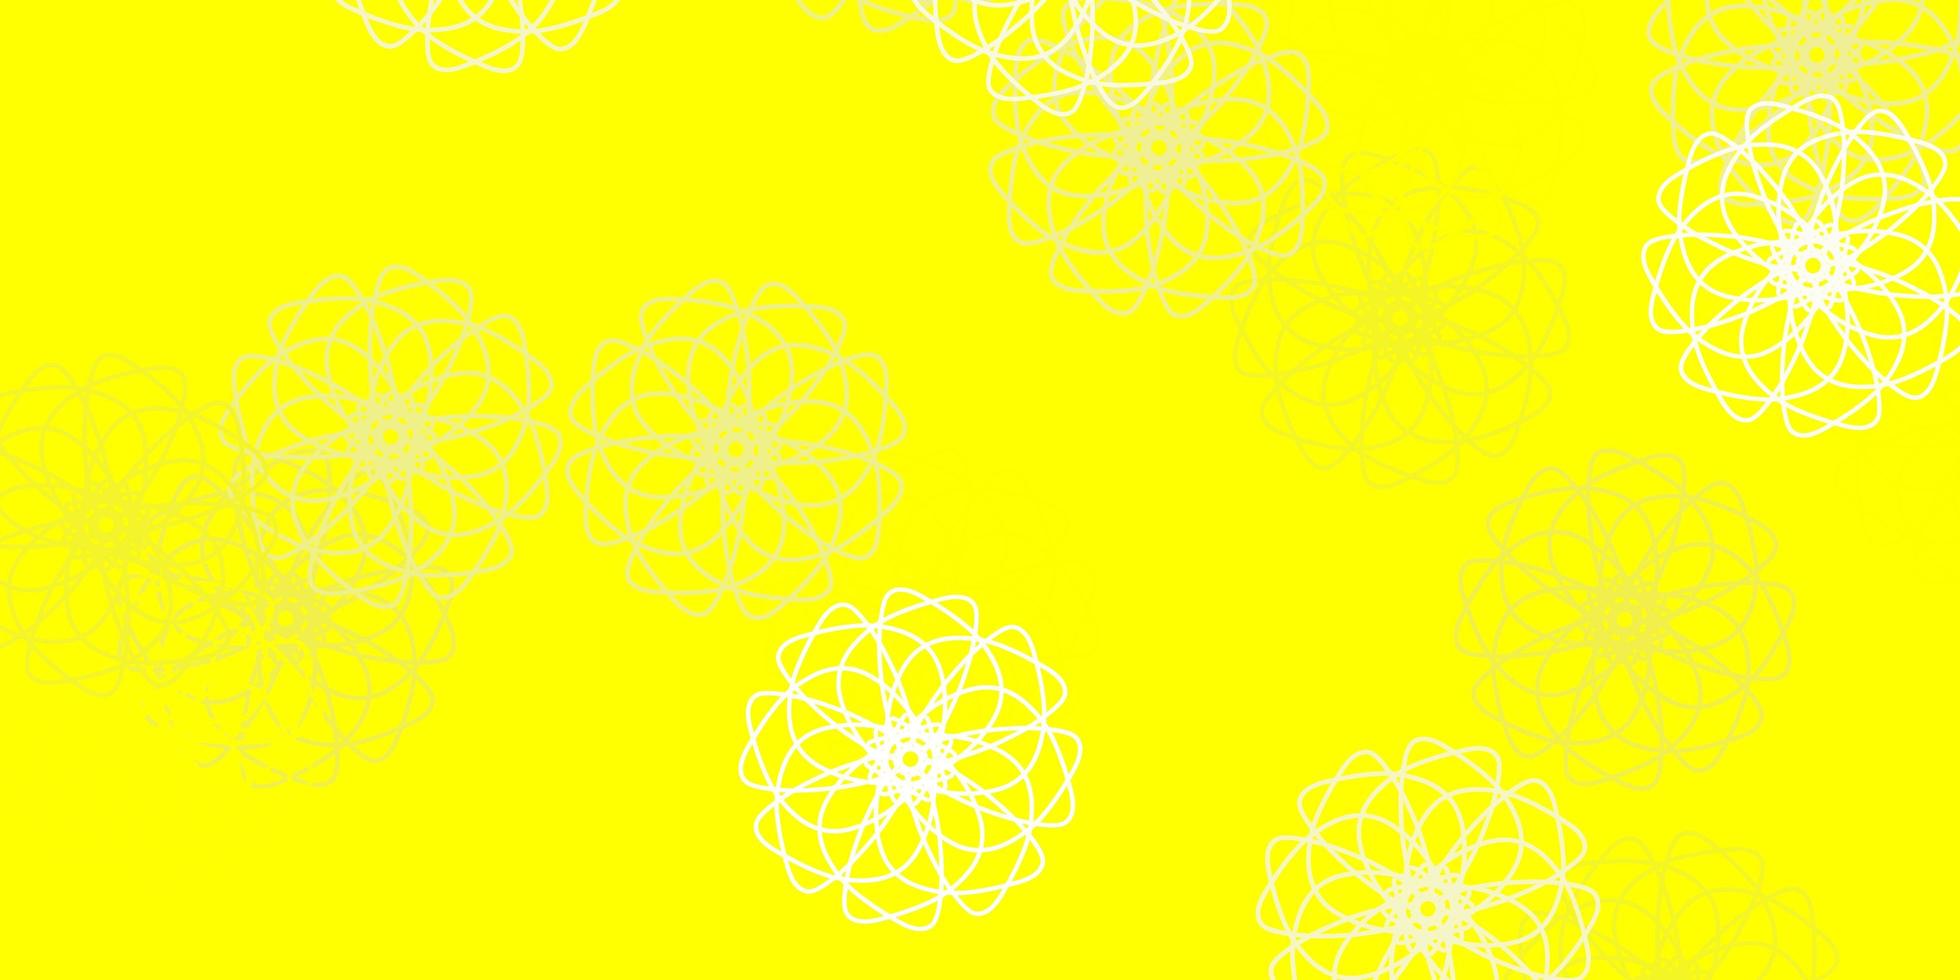 opera d'arte naturale vettoriale giallo chiaro con fiori